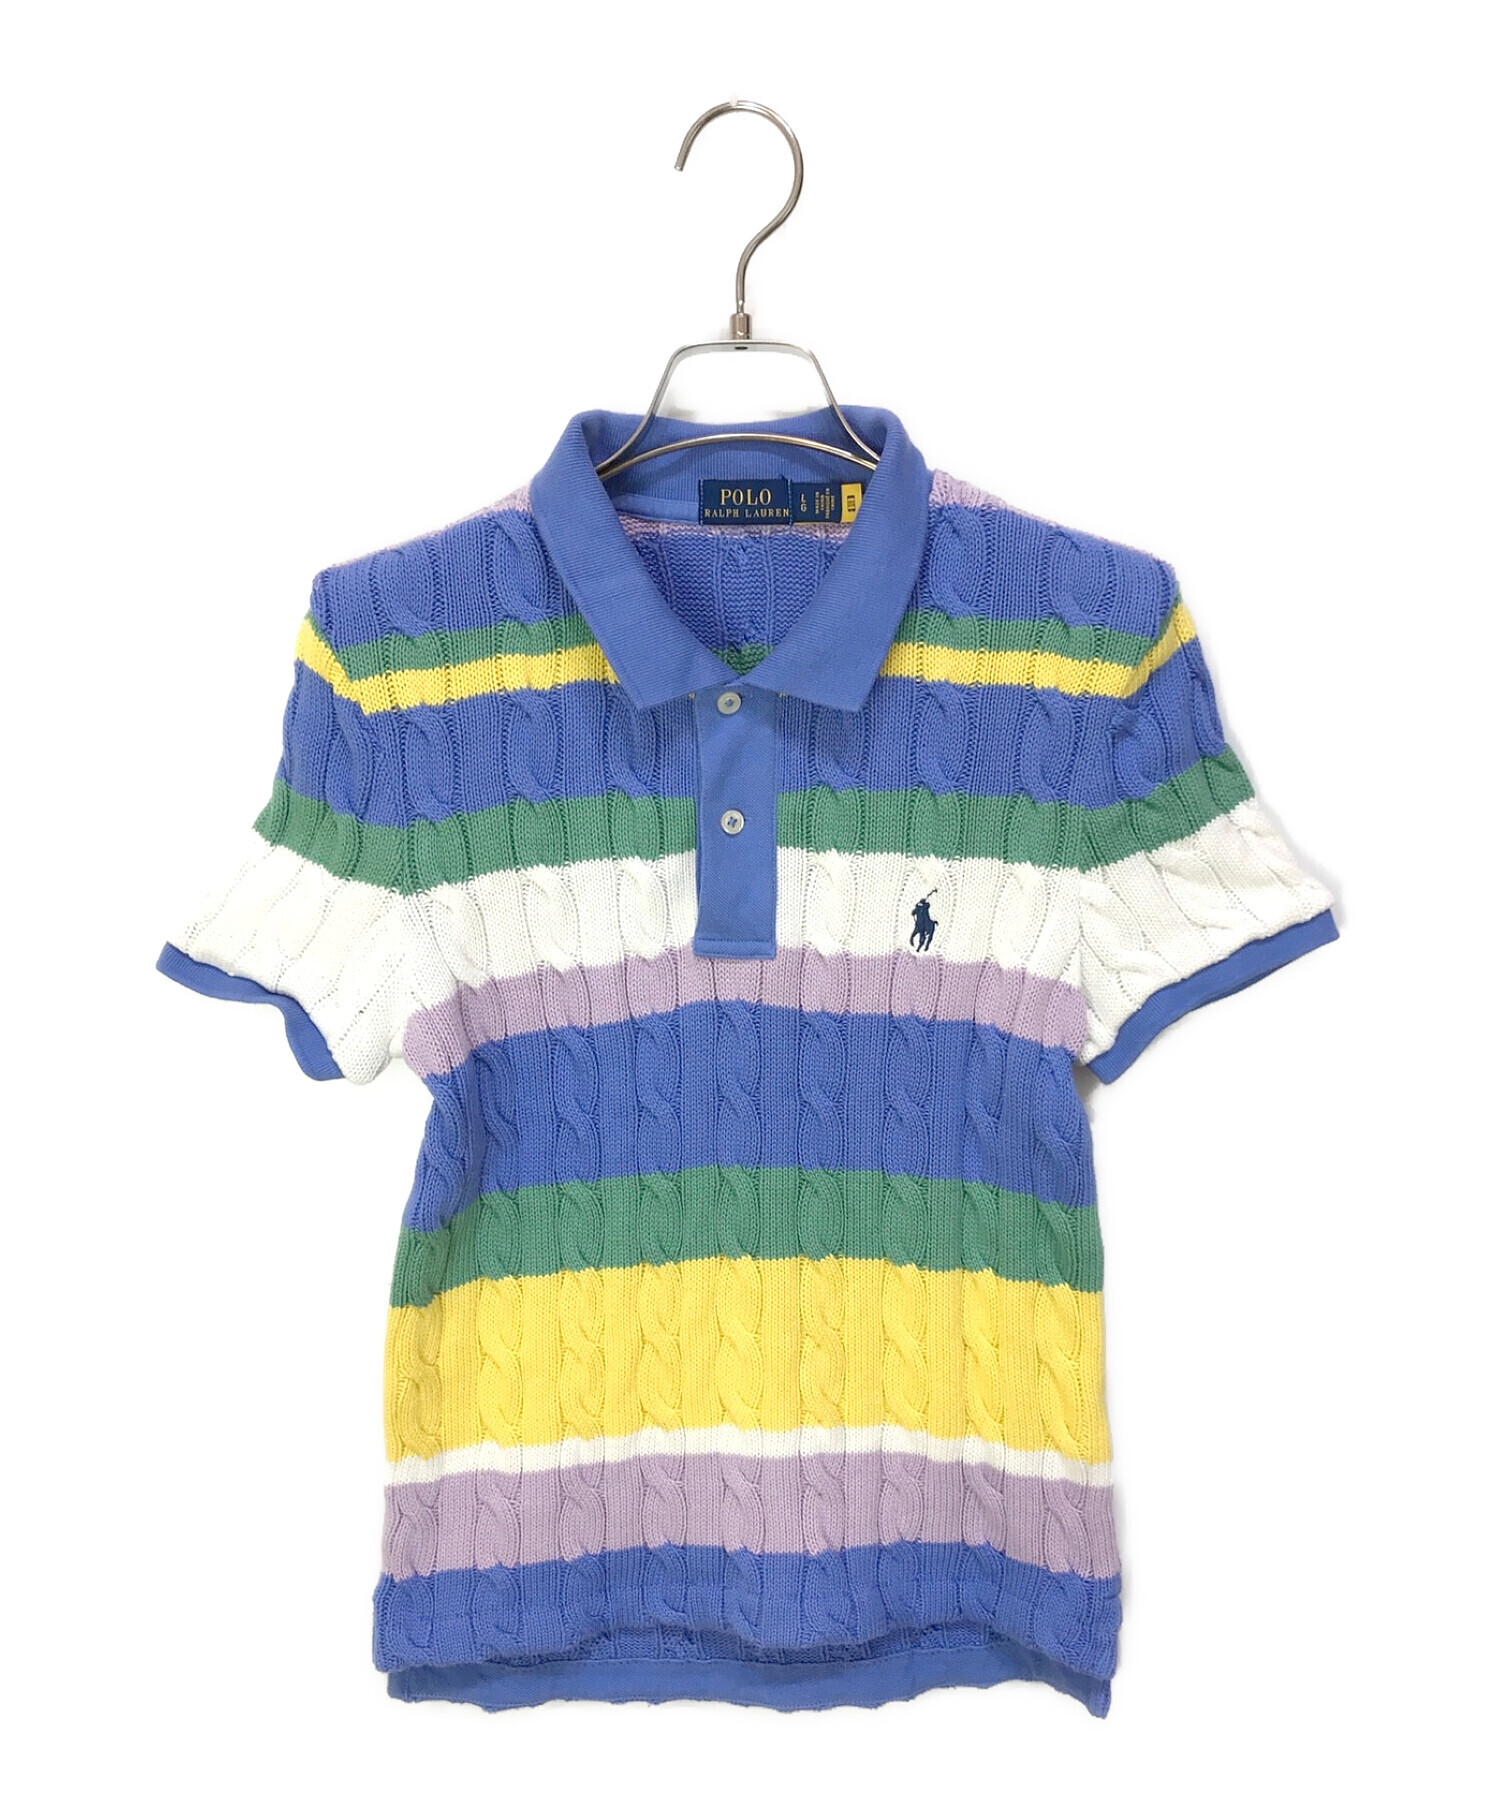 期間限定】 ラルフローレンのケーブル編みがレアなポロシャツ